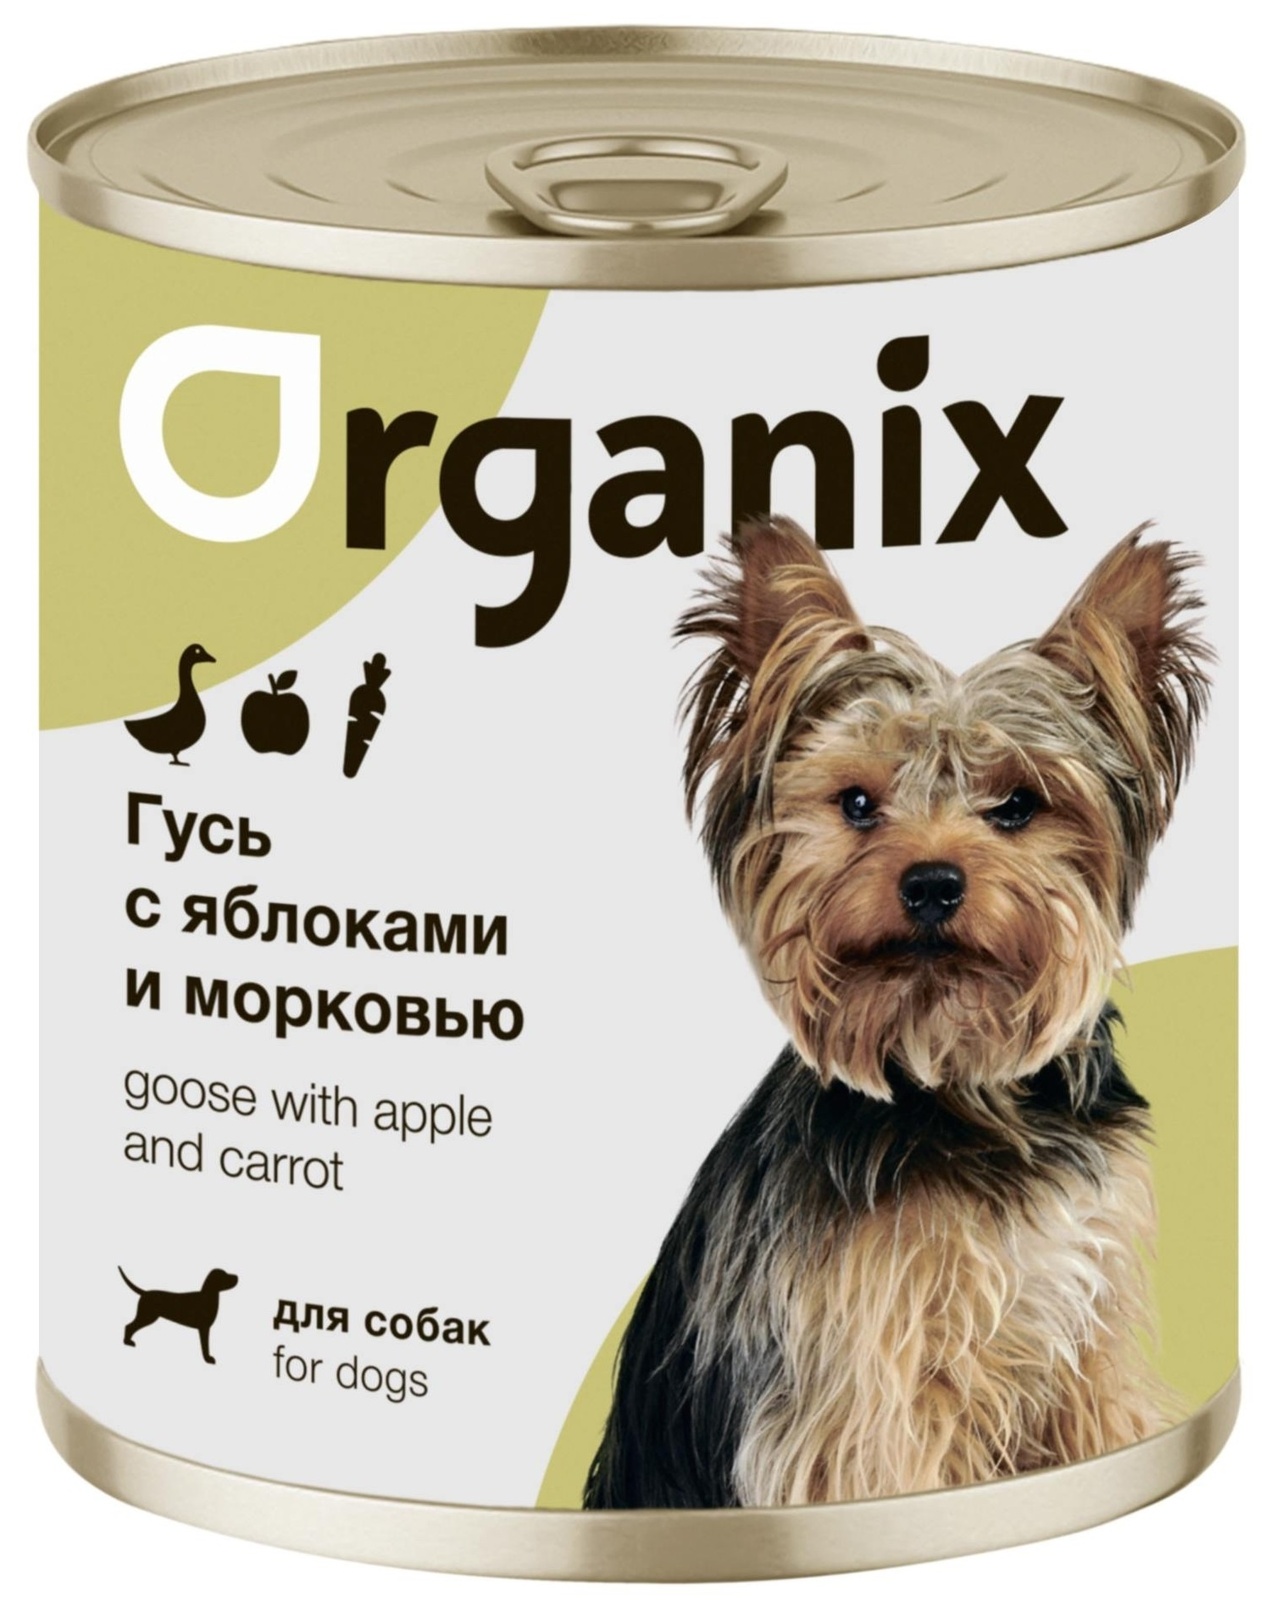 Organix консервы Organix консервы для собак Фрикасе из гуся с яблоками и морковкой (400 г) organix консервы organix консервы для собак заливное из говядины с черникой 400 г